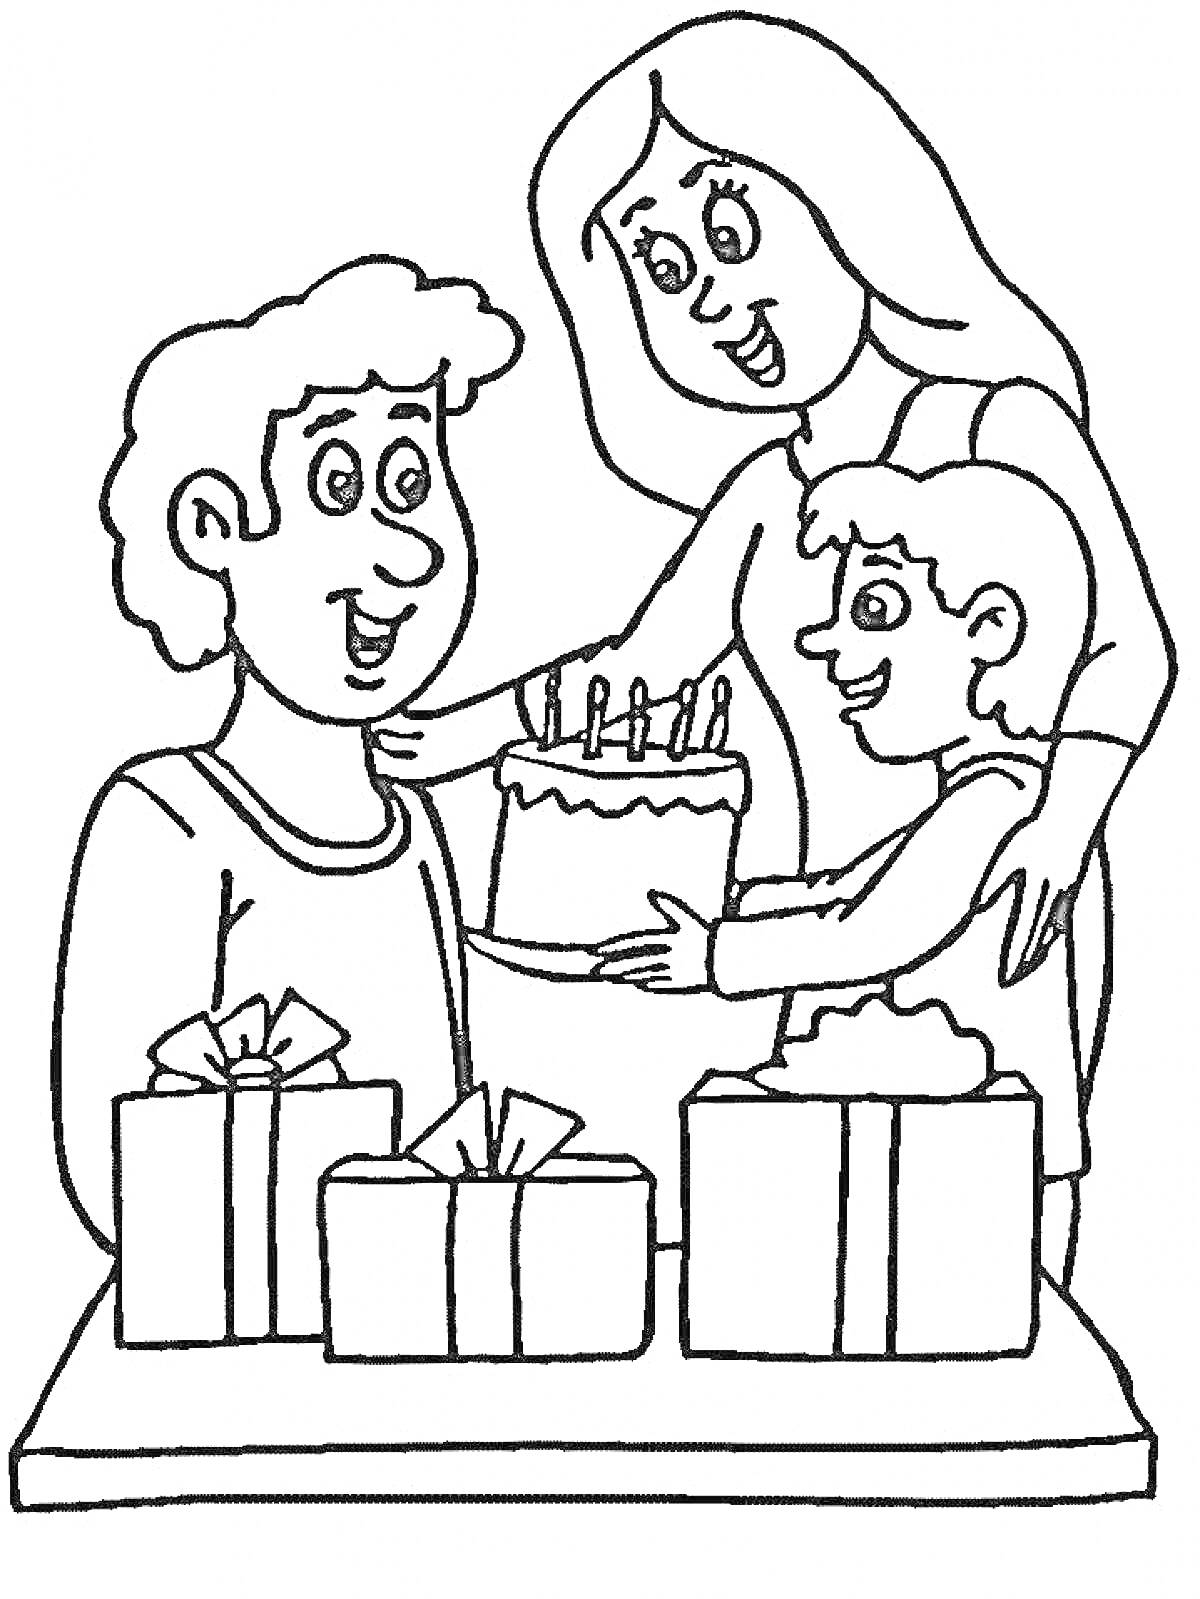 Раскраска Семья с тортом и подарками, ребенок дарит подарок папе